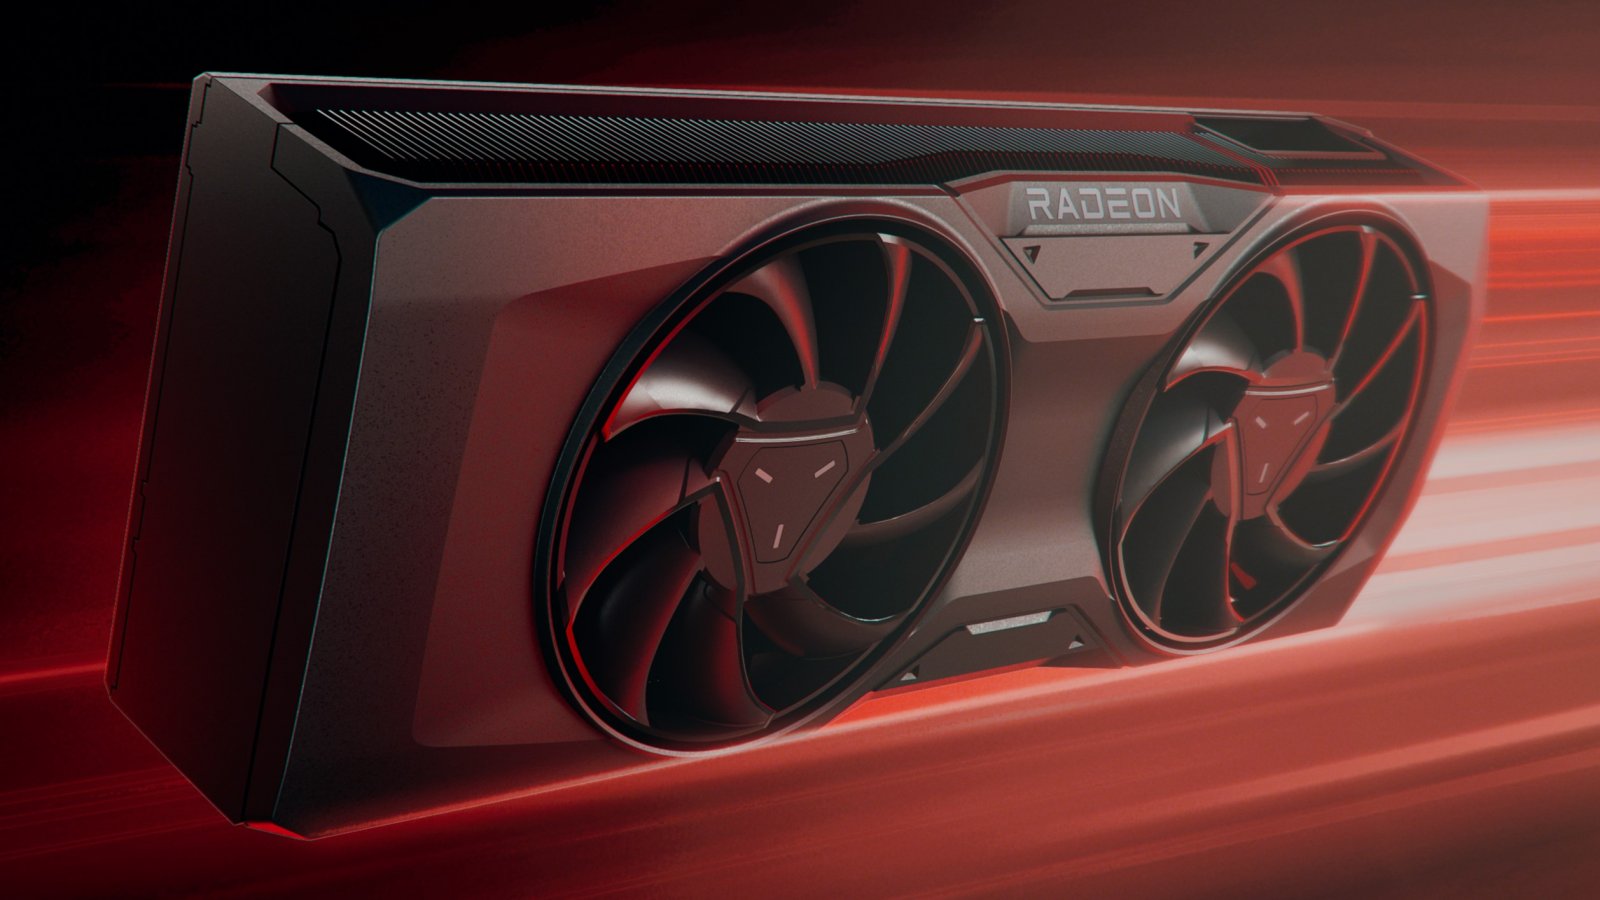 La prossima generazione di schede video AMD Radeon potrebbe essere molto economica